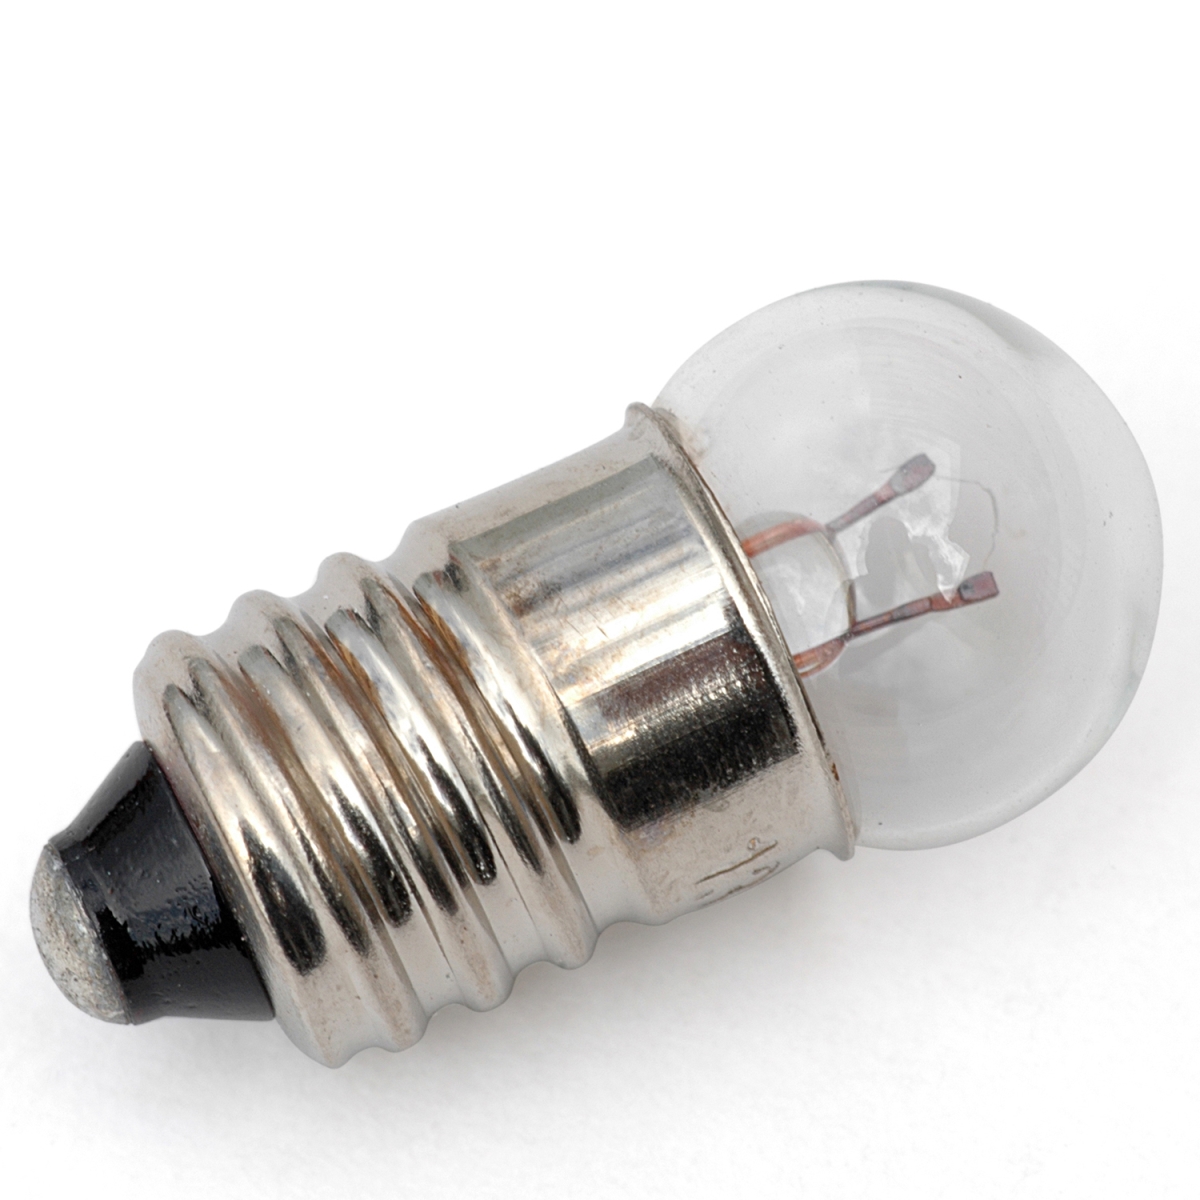 1.3v 1-d Cell Miniature Light Bulb, Clear